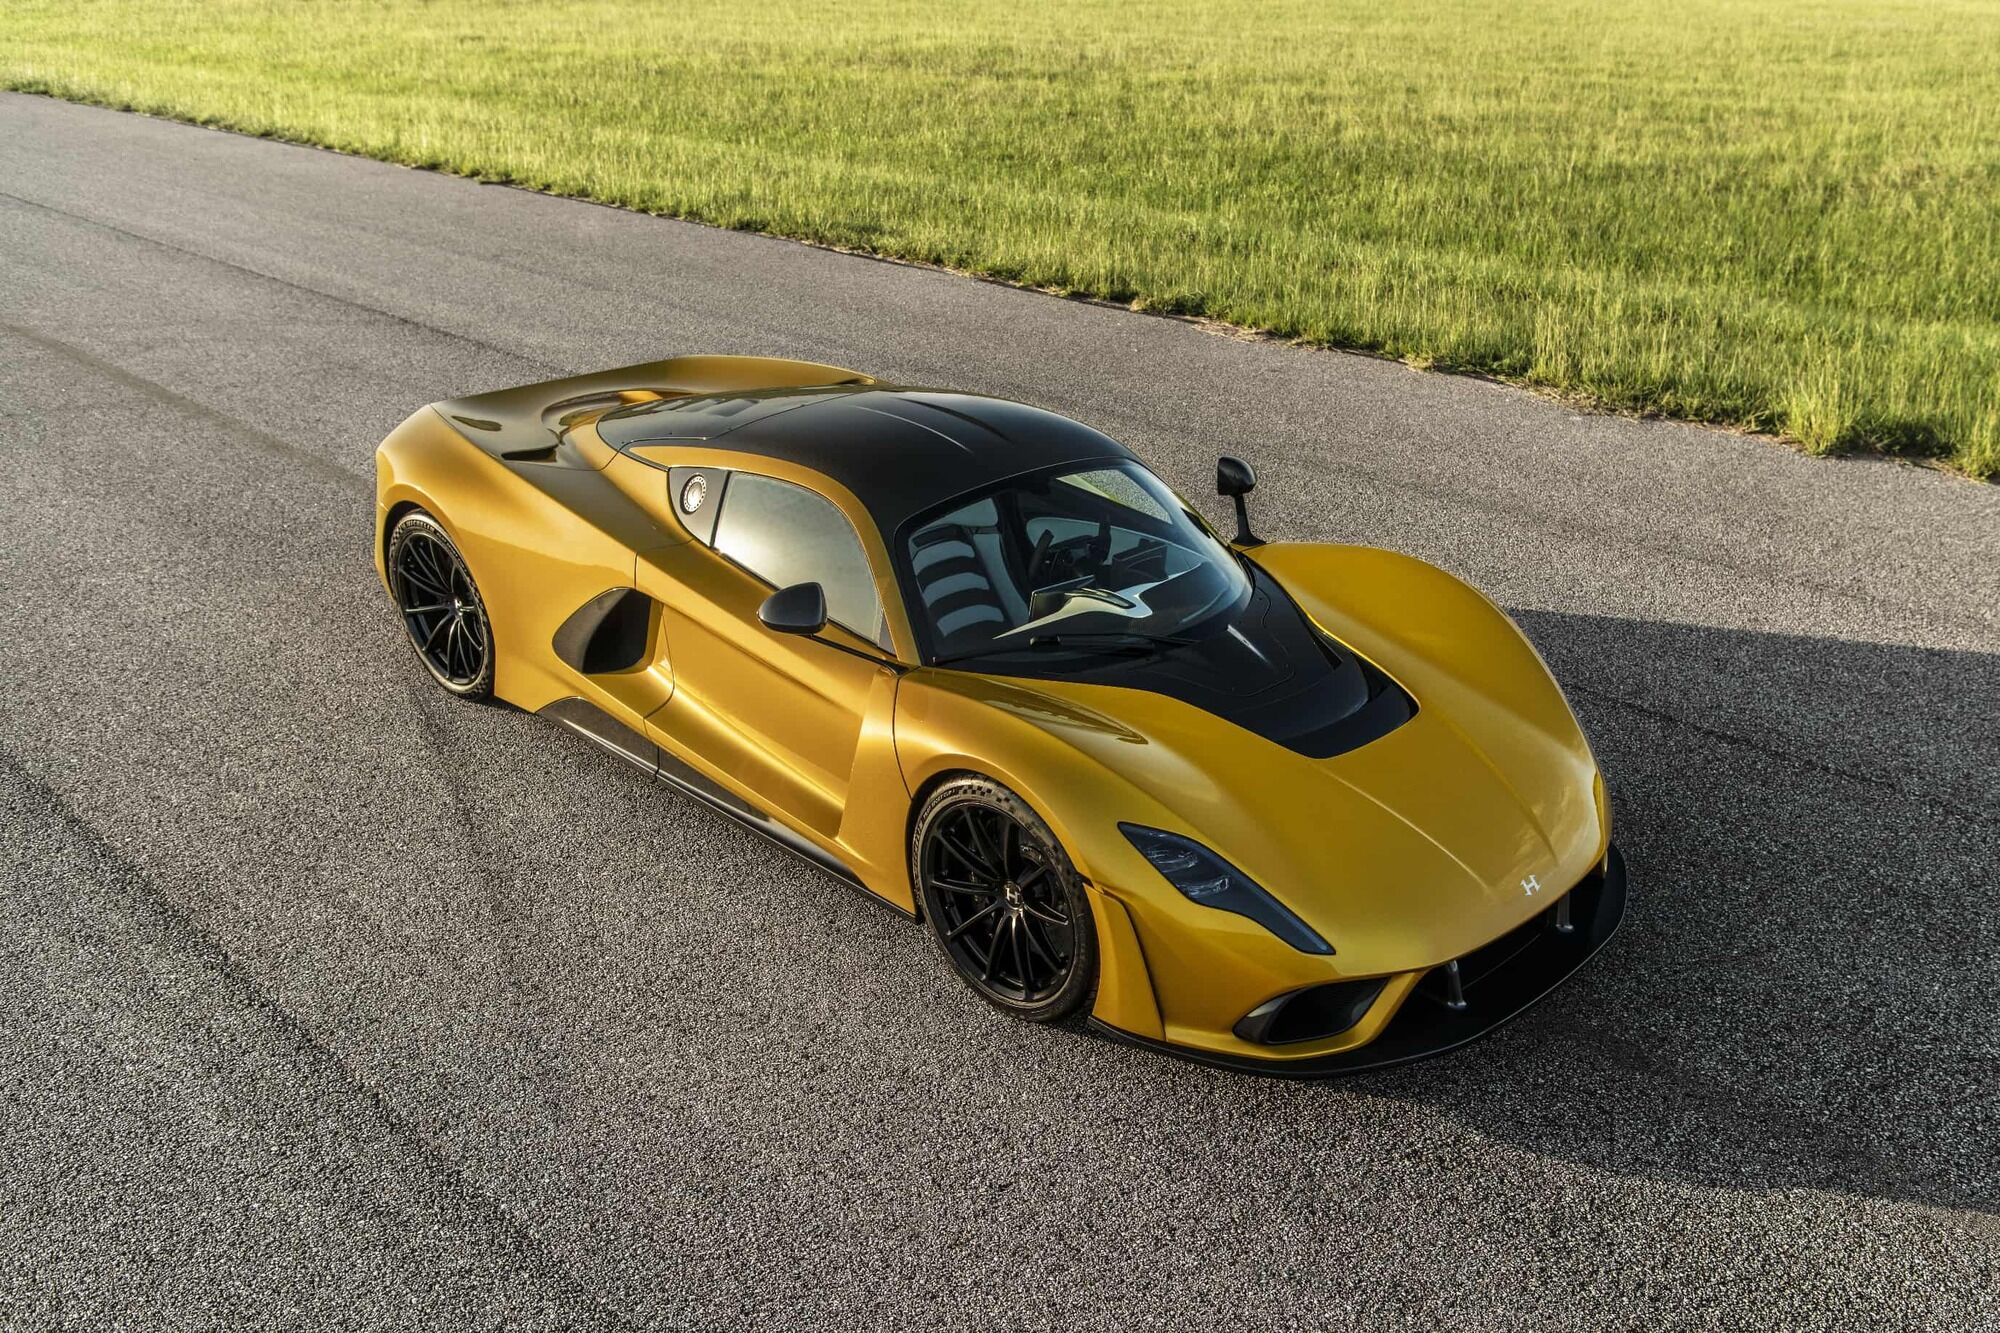 Купе Venom F5 продемонстрировало скорость 437 км/ч на полигоне Johnny Bohmer во Флориде, но по данным производителя автомобиль способен развивать до 500 км/ч